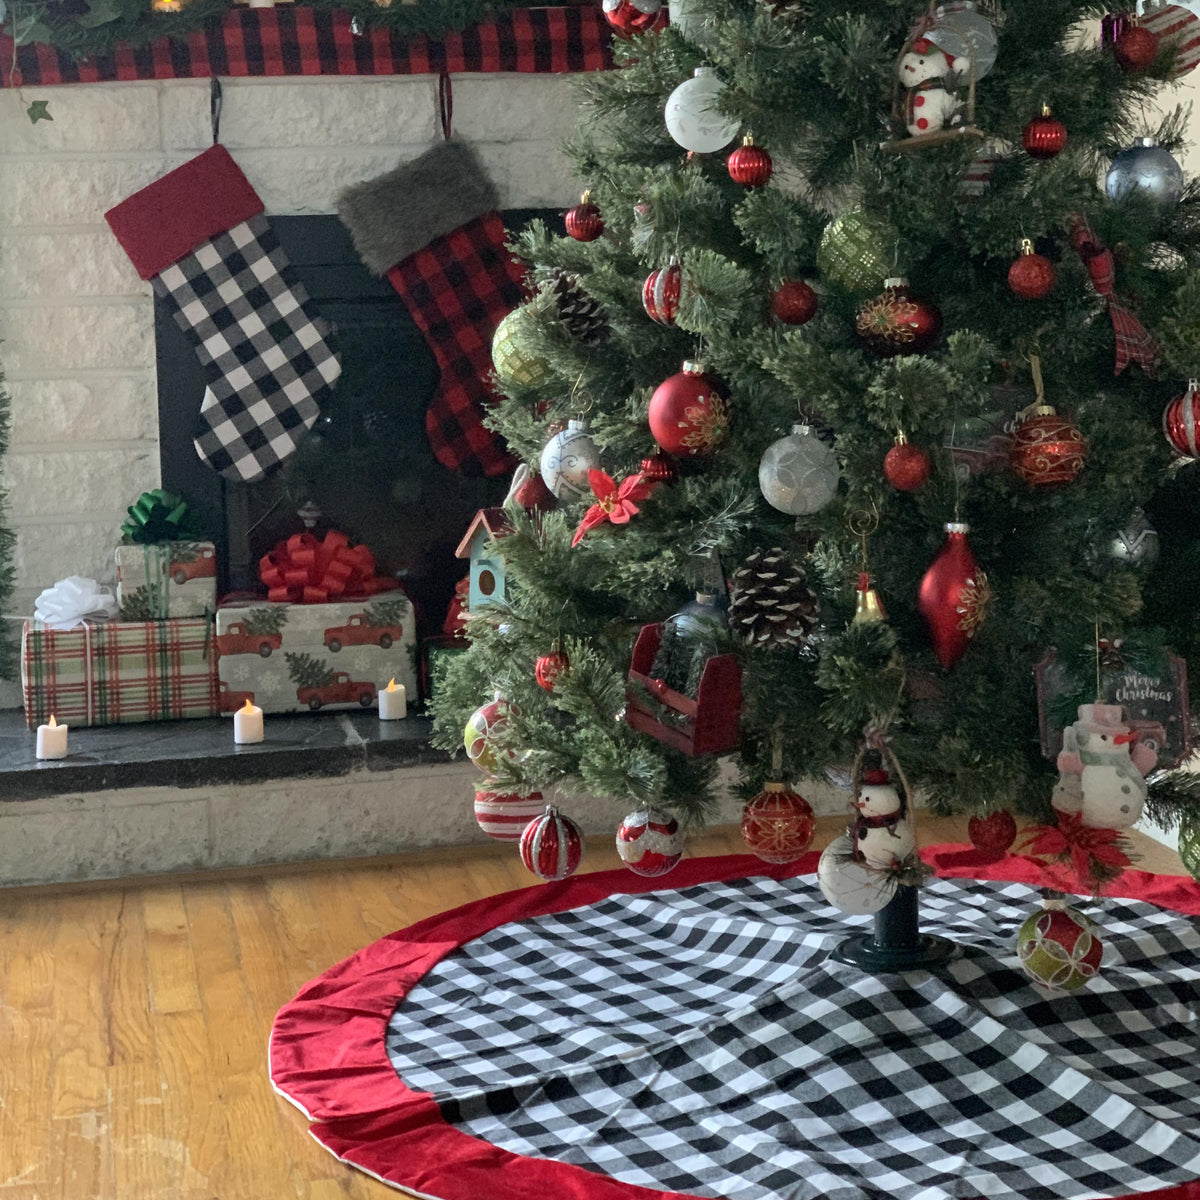 Buffalo Plaid Christmas Tree Skirt, Buffalo Check Tree Skirt